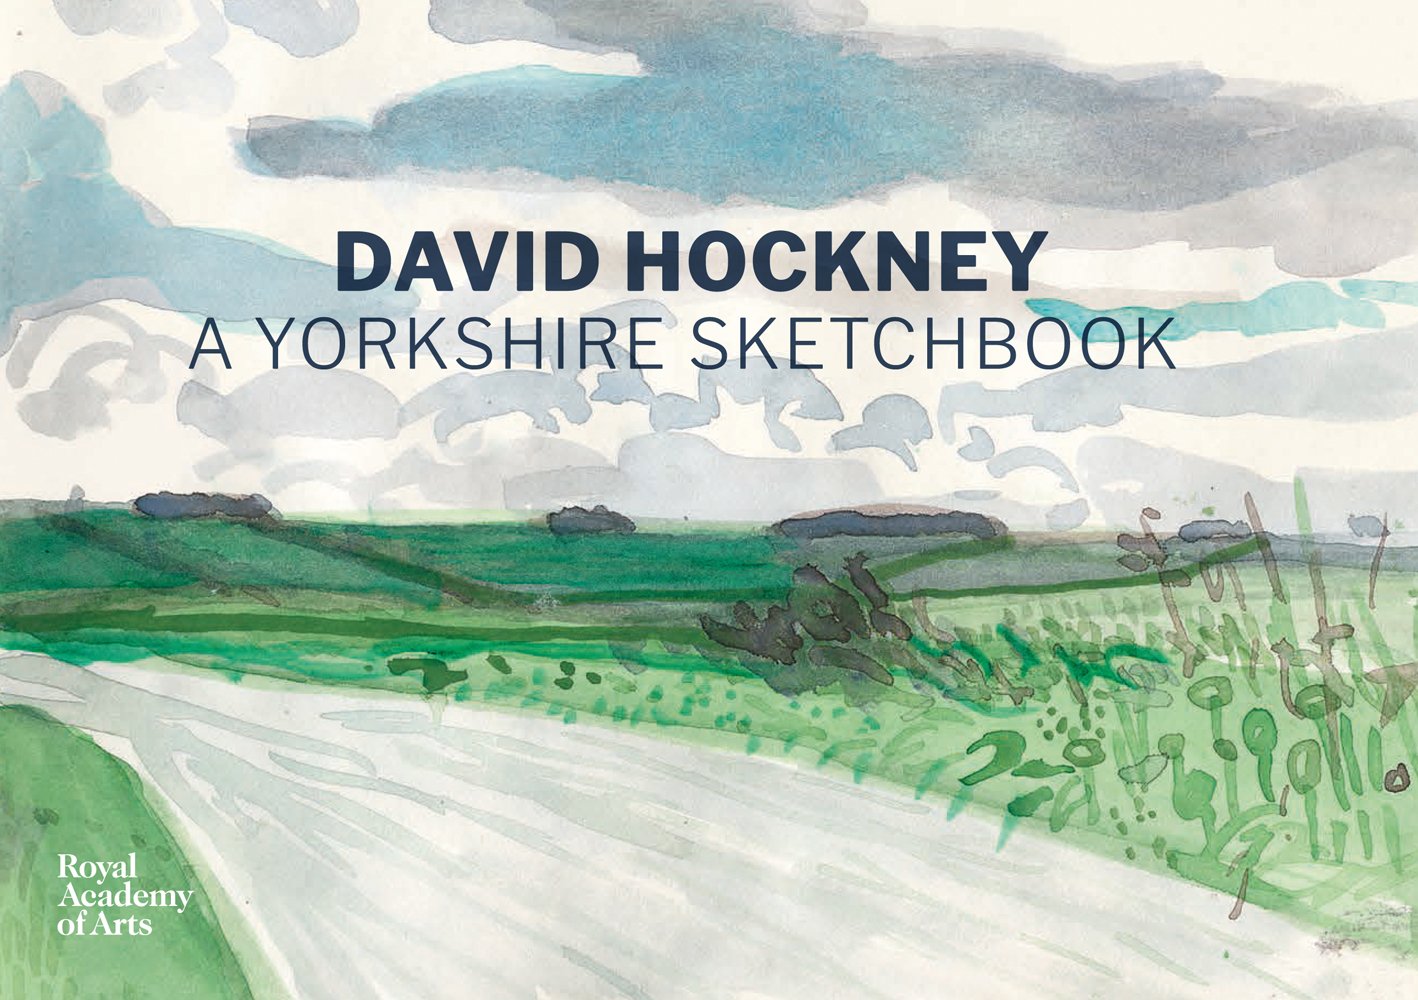 A Yorkshire Sketchbook